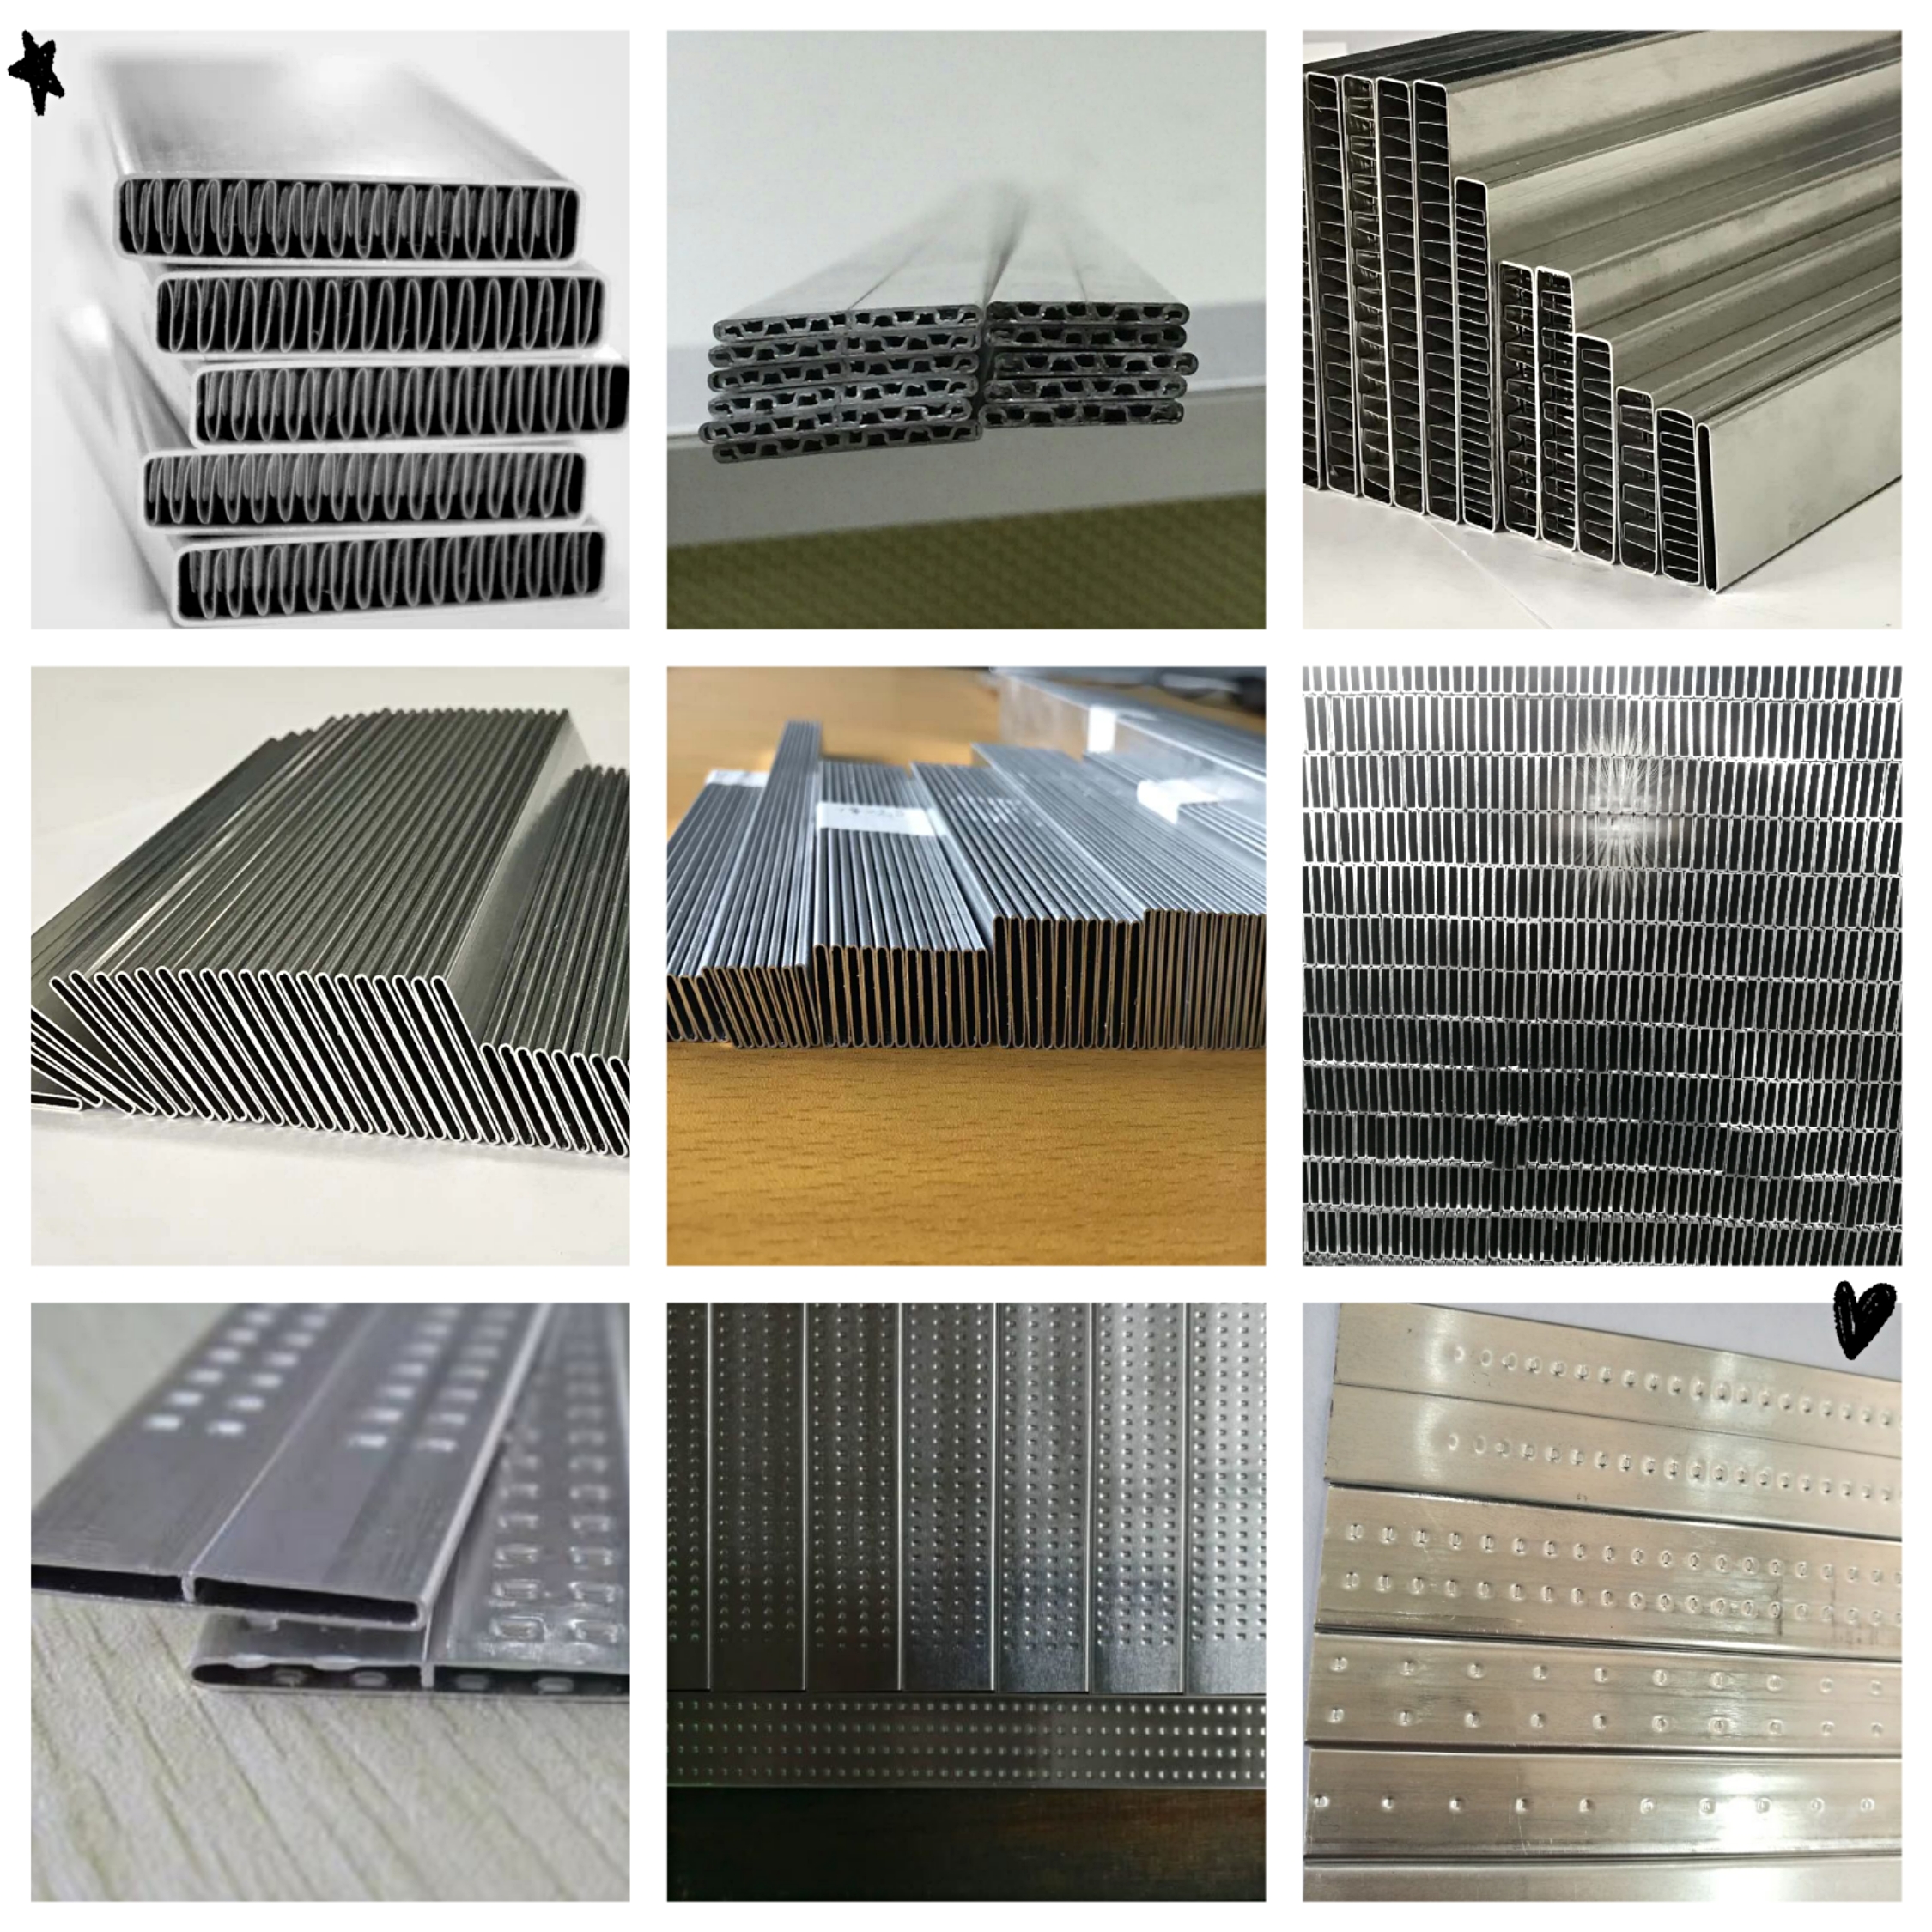 Спецификация и употреба на алуминиева тръба